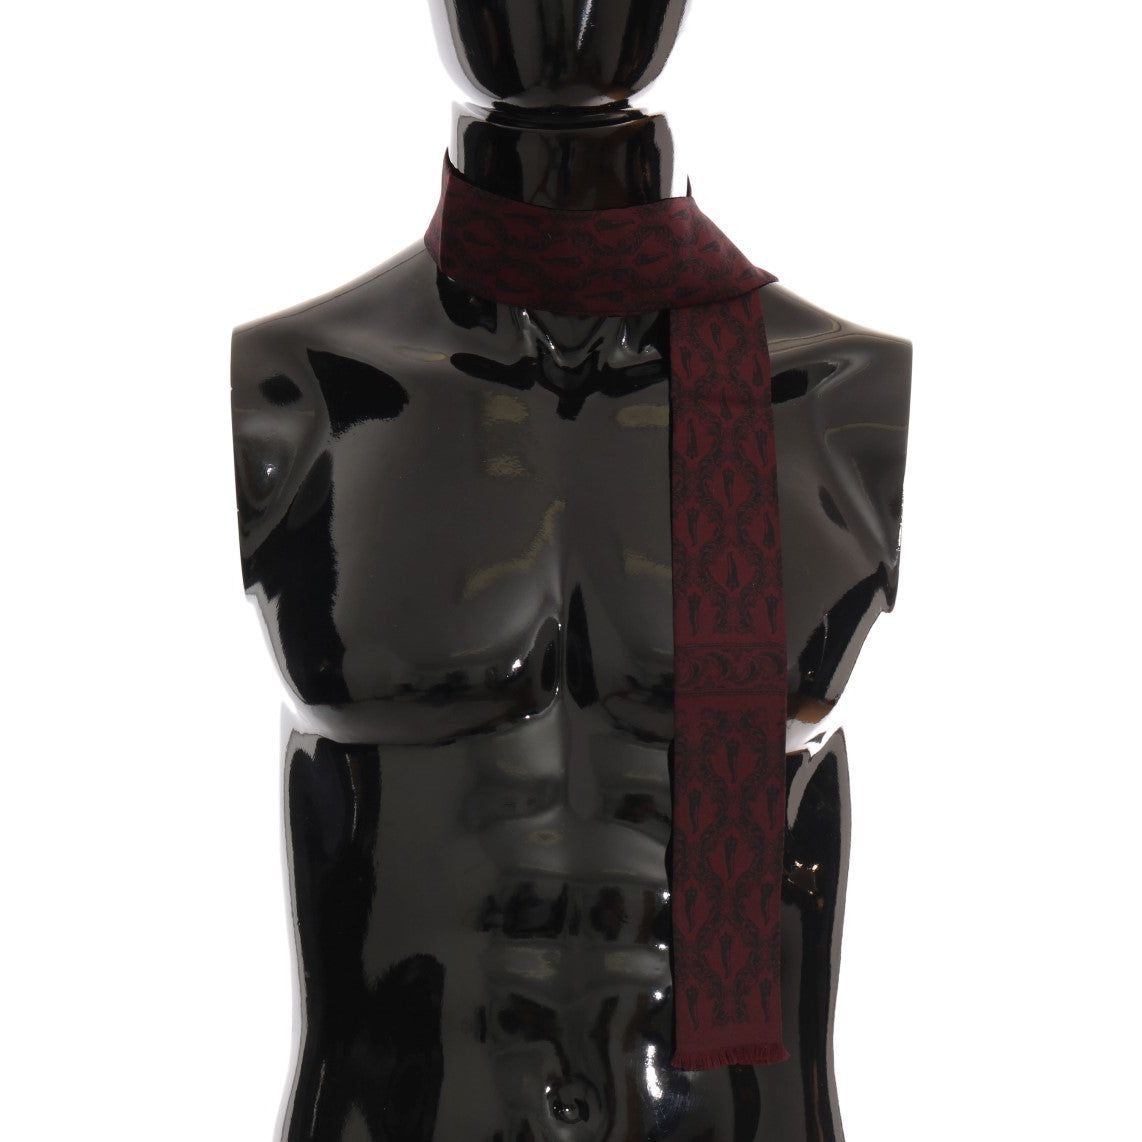 Dolce & Gabbana Silk Bordeaux Crown Chili Print Mens Scarf bordeaux-silk-crown-chili-scarf Silk Scarves 517984-bordeaux-silk-crown-chili-scarf-1.jpg